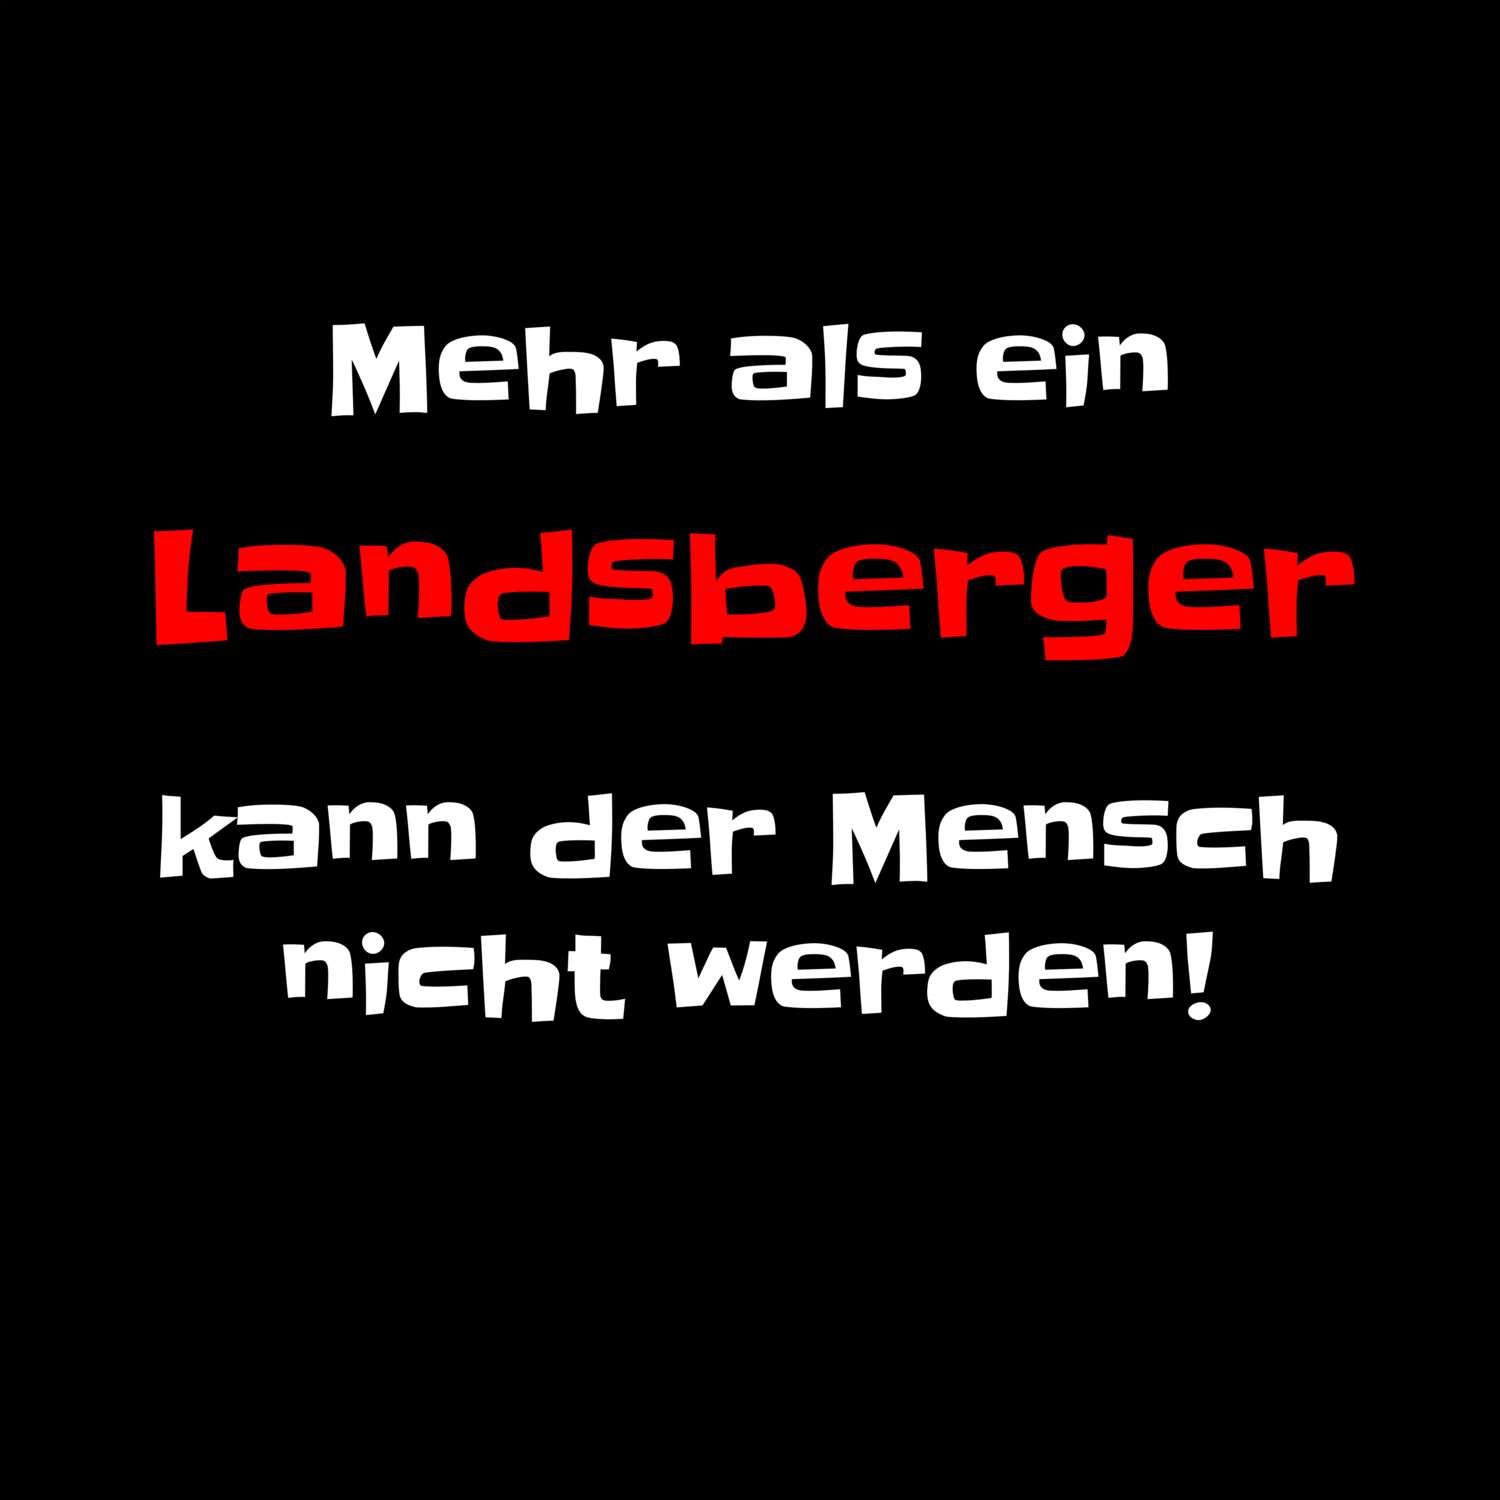 Landsberg T-Shirt »Mehr als ein«